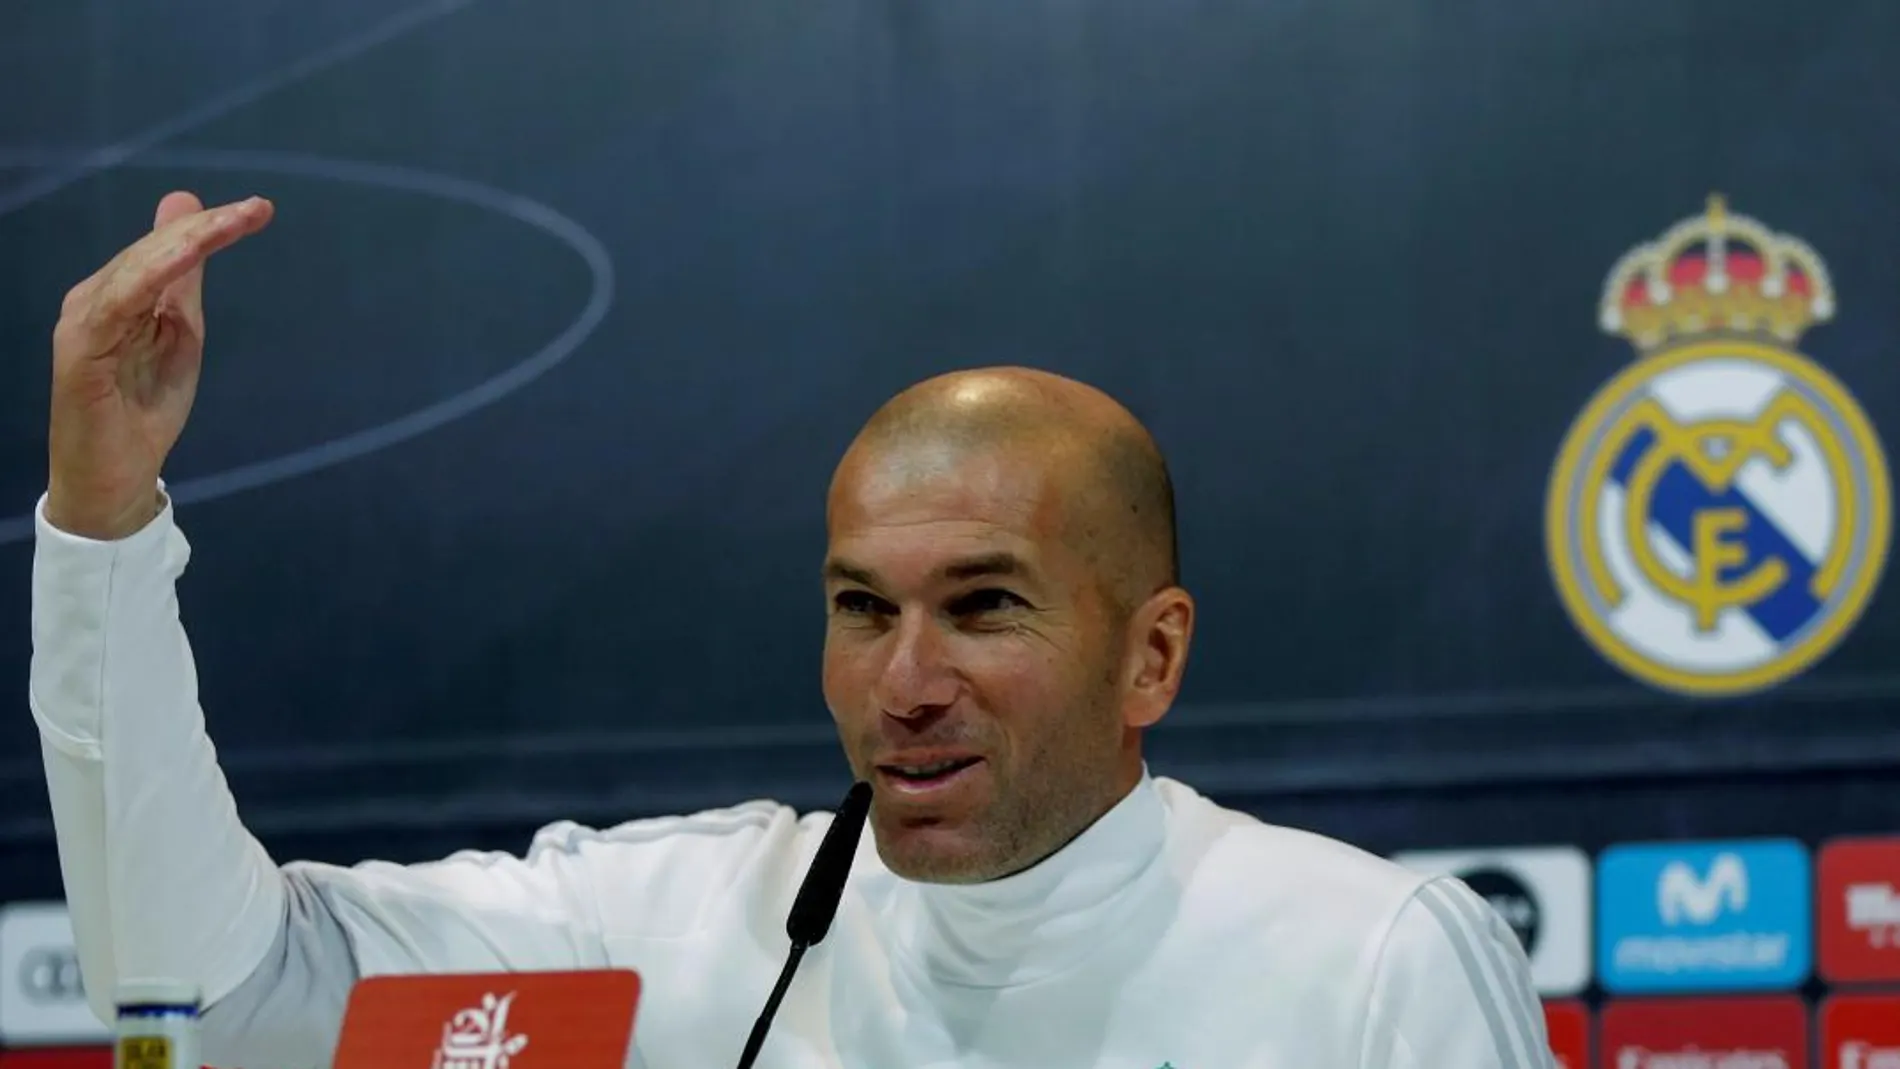 El entrenador del Real Madrid, Zinedine Zidane, durante la rueda de prensa que ofreció tras el entrenamiento que el equipo realizó hoy en la Ciudad Deportiva de Valdebebas para preparar el partido de liga contra el Valencia